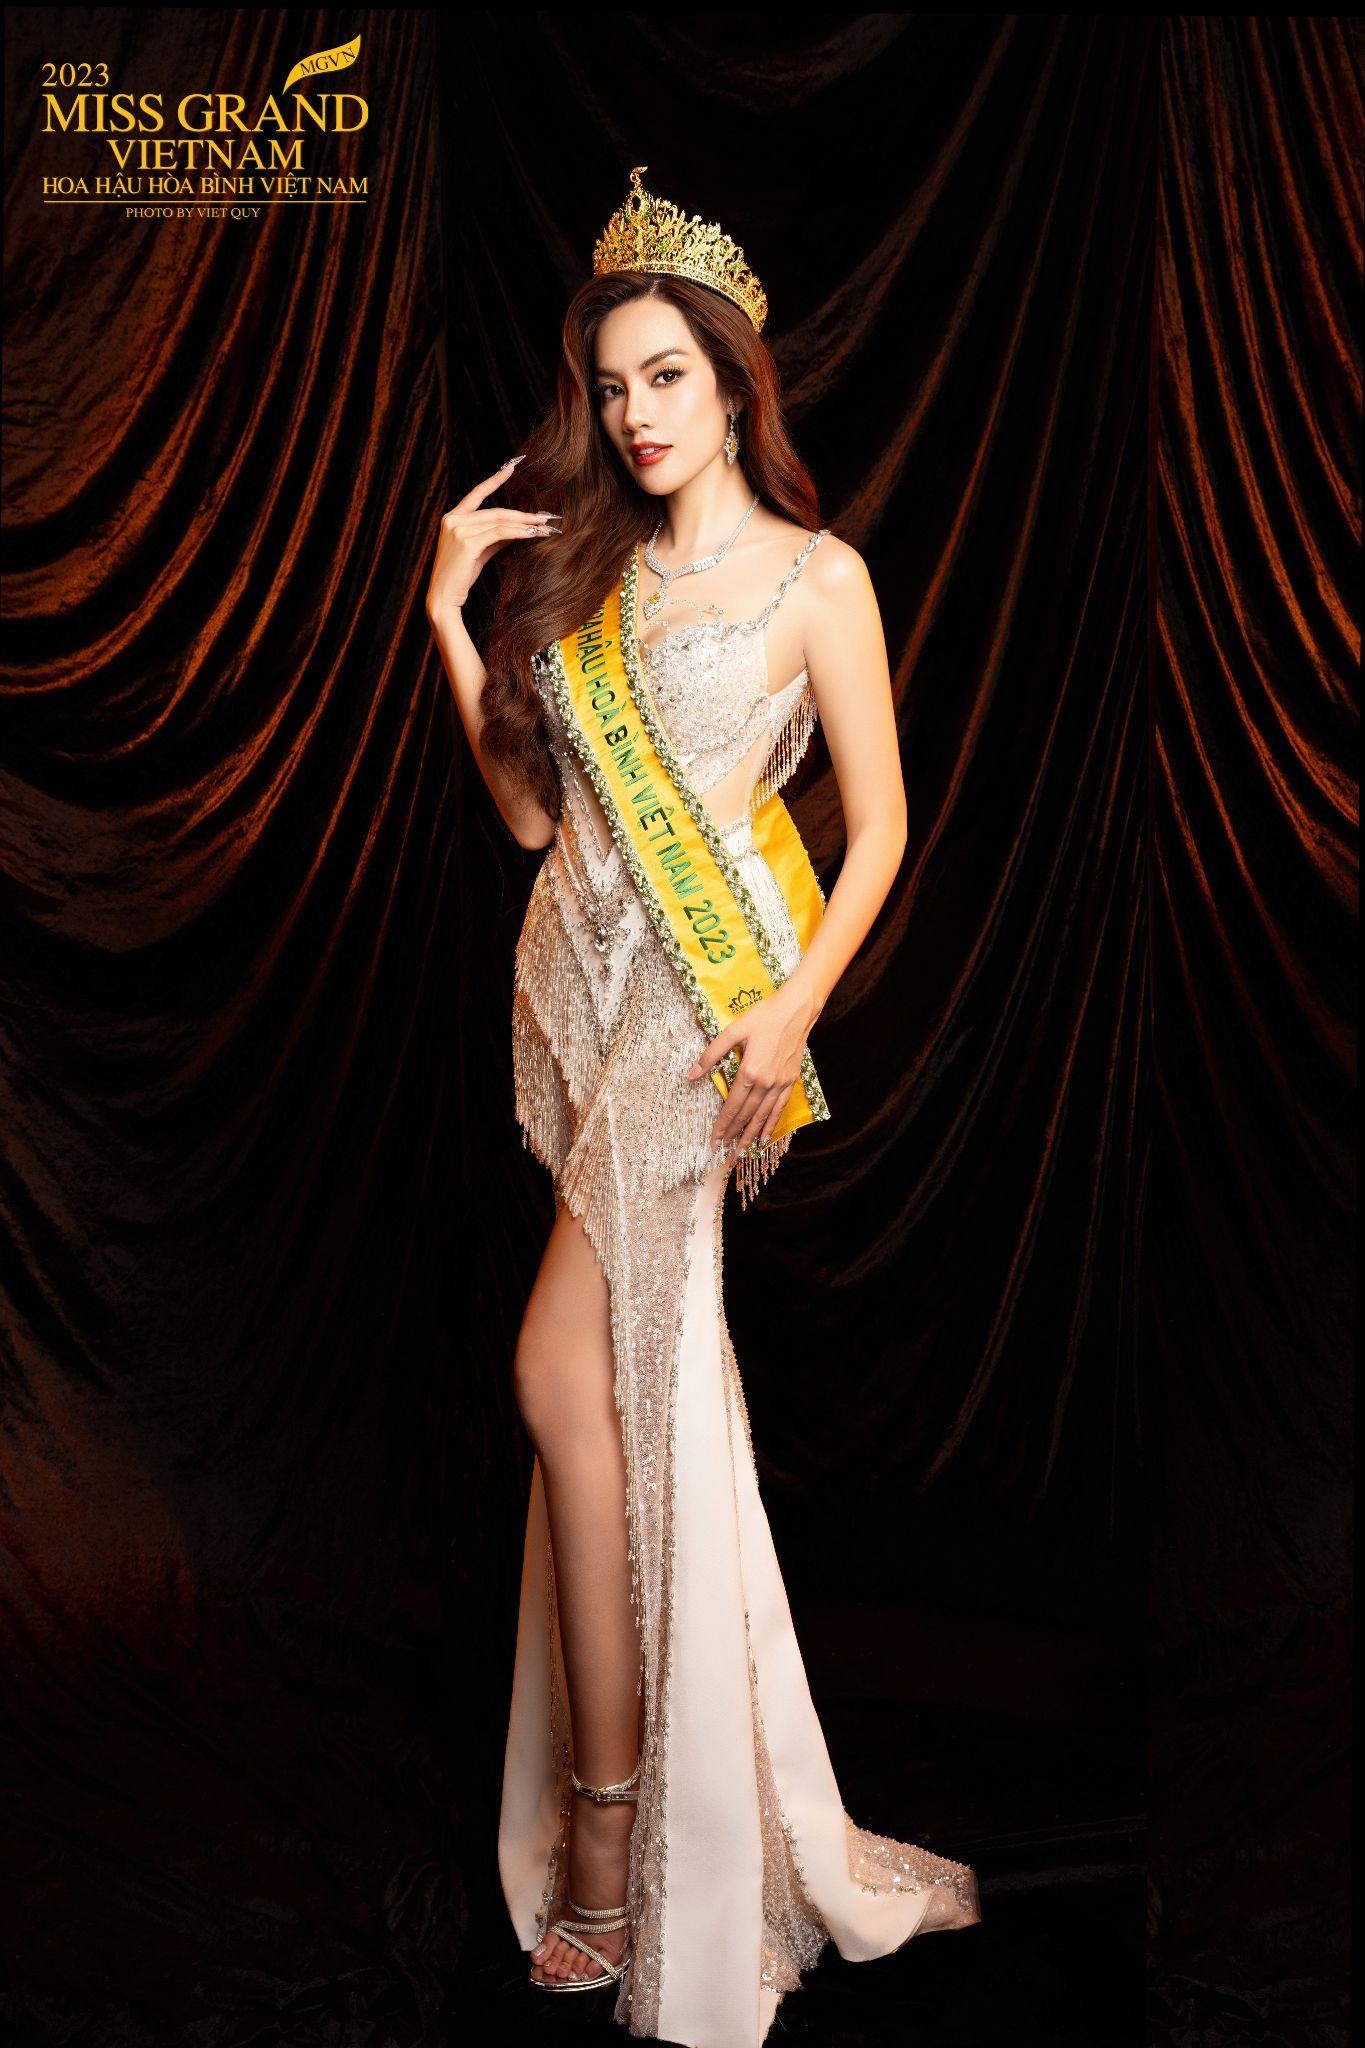 Ngọc Châu Âu đồng hành cùng Miss Grand Vietnam 2023 đi tìm chủ nhân vương miện “Wings of the grand” - Ảnh 3.